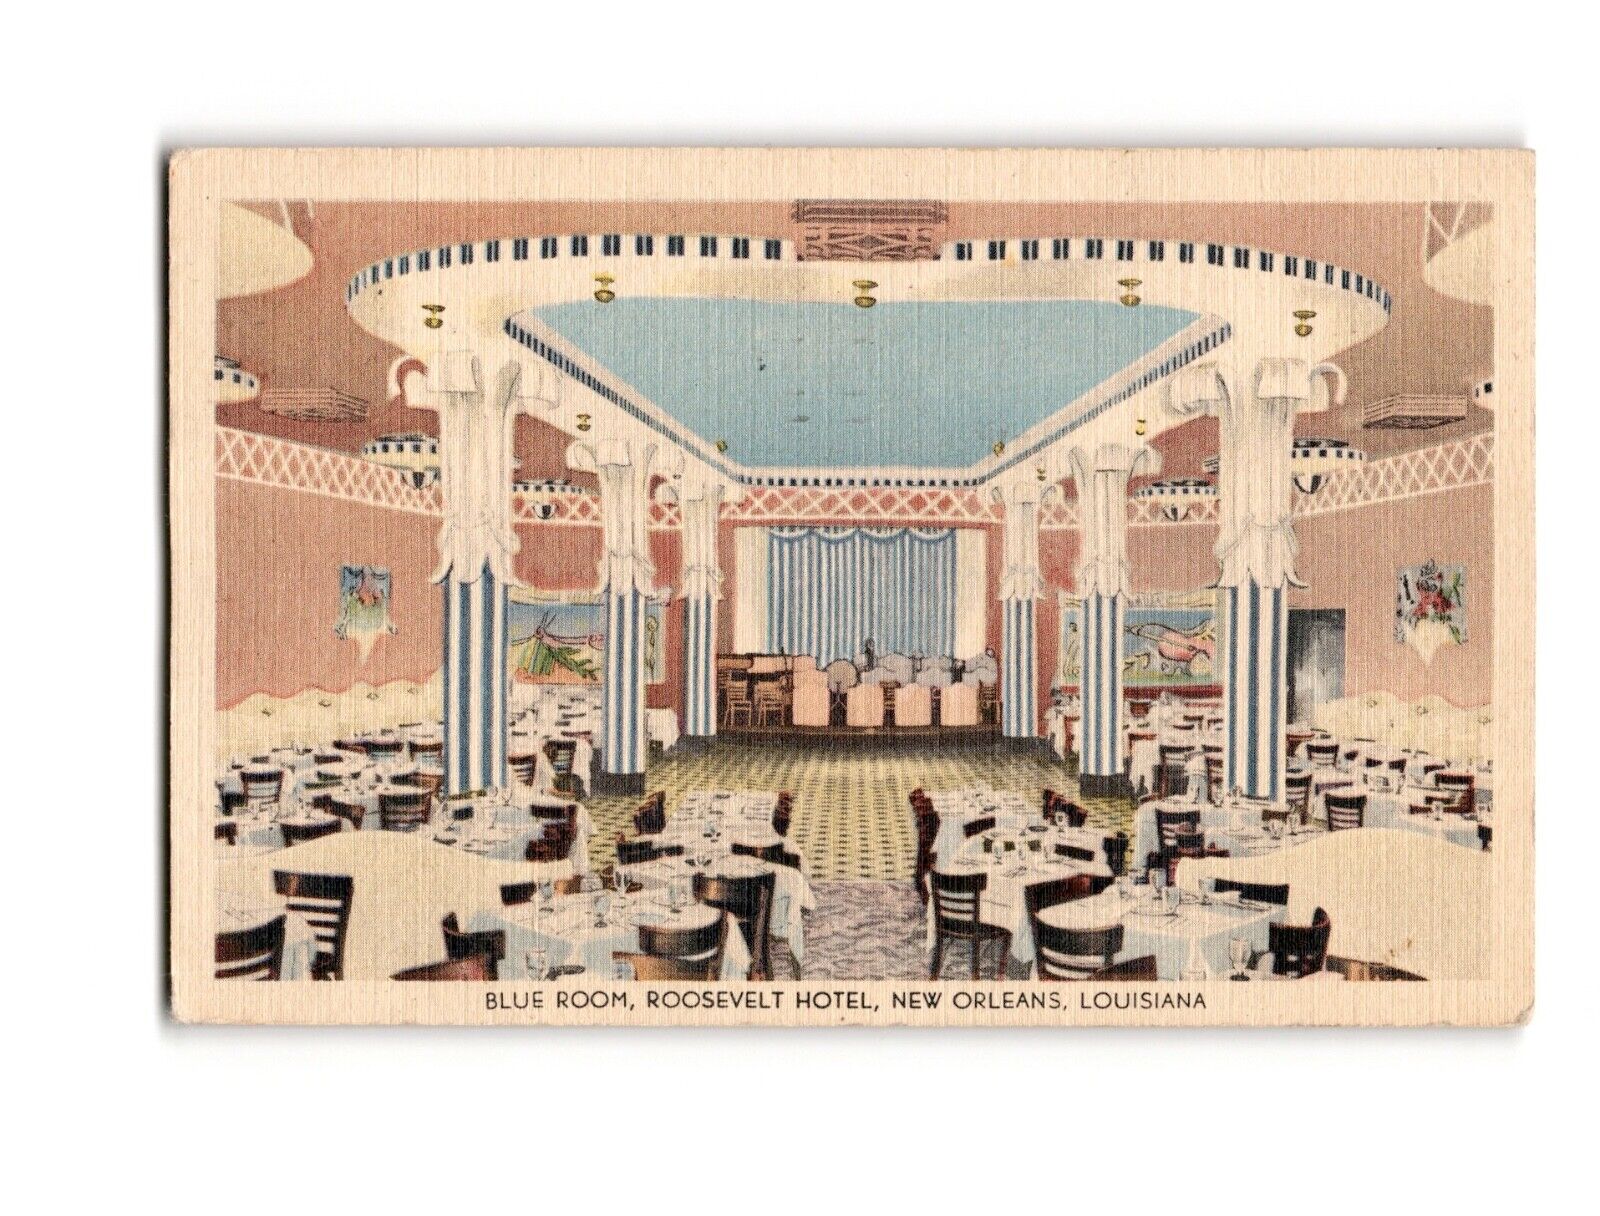 Roosevelt Hotel Blue Room, New Orleans - Vintage Postcard, Sent in 1943